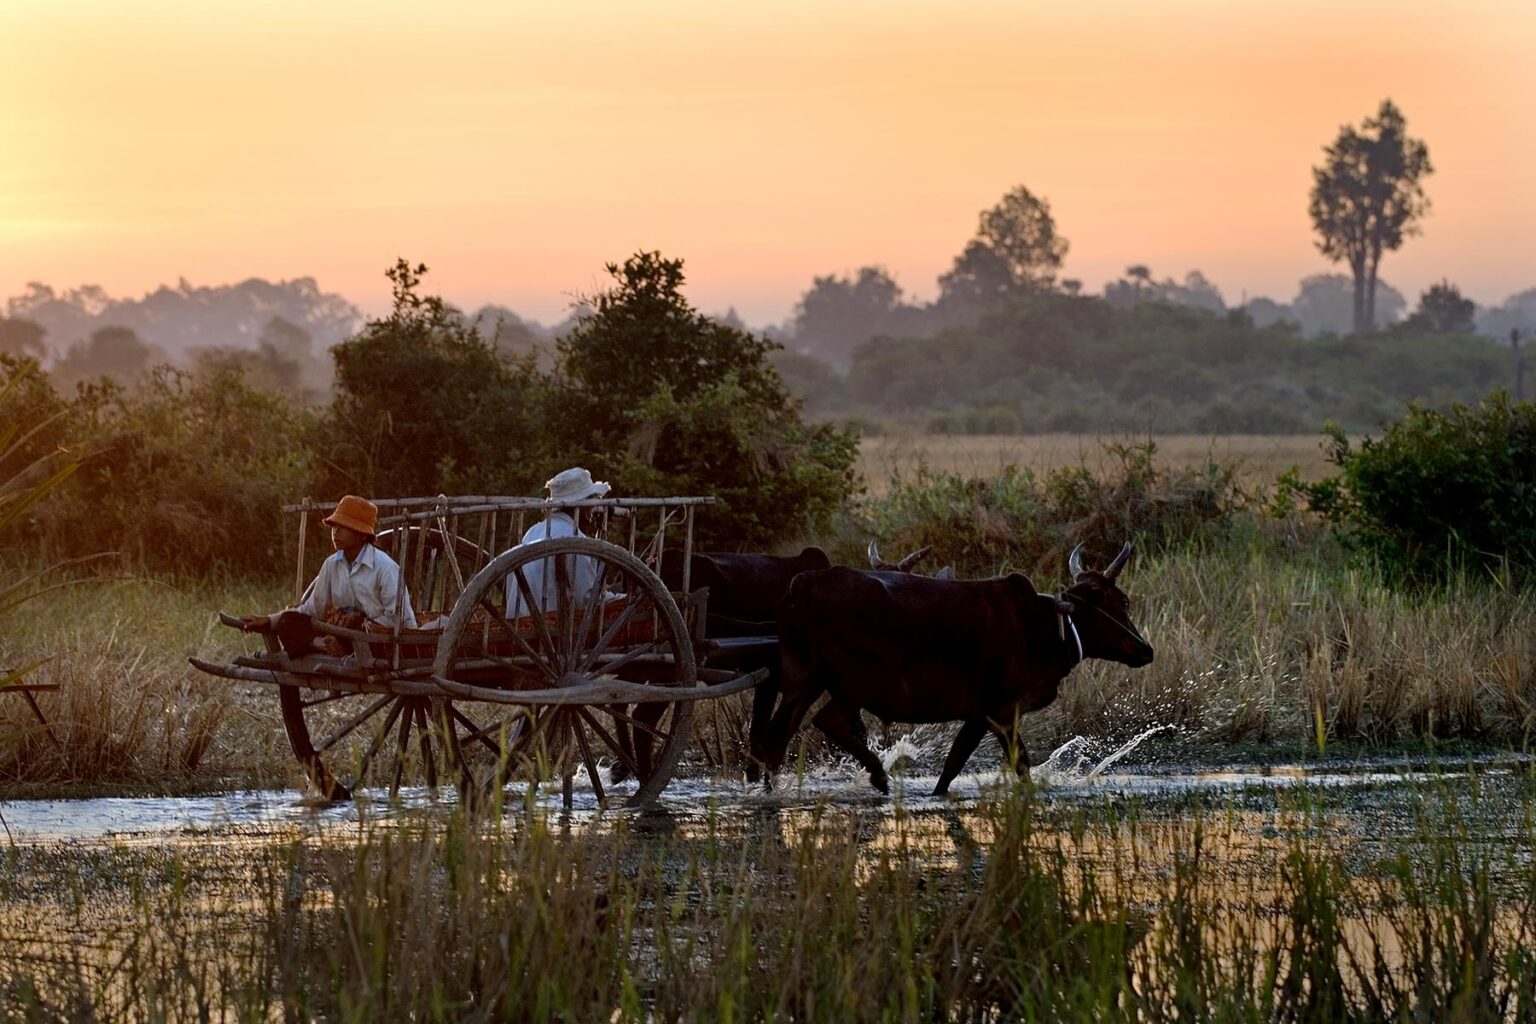 Cambodian farmers in an ox cart at dawn near Angkor Wat - Cambodia